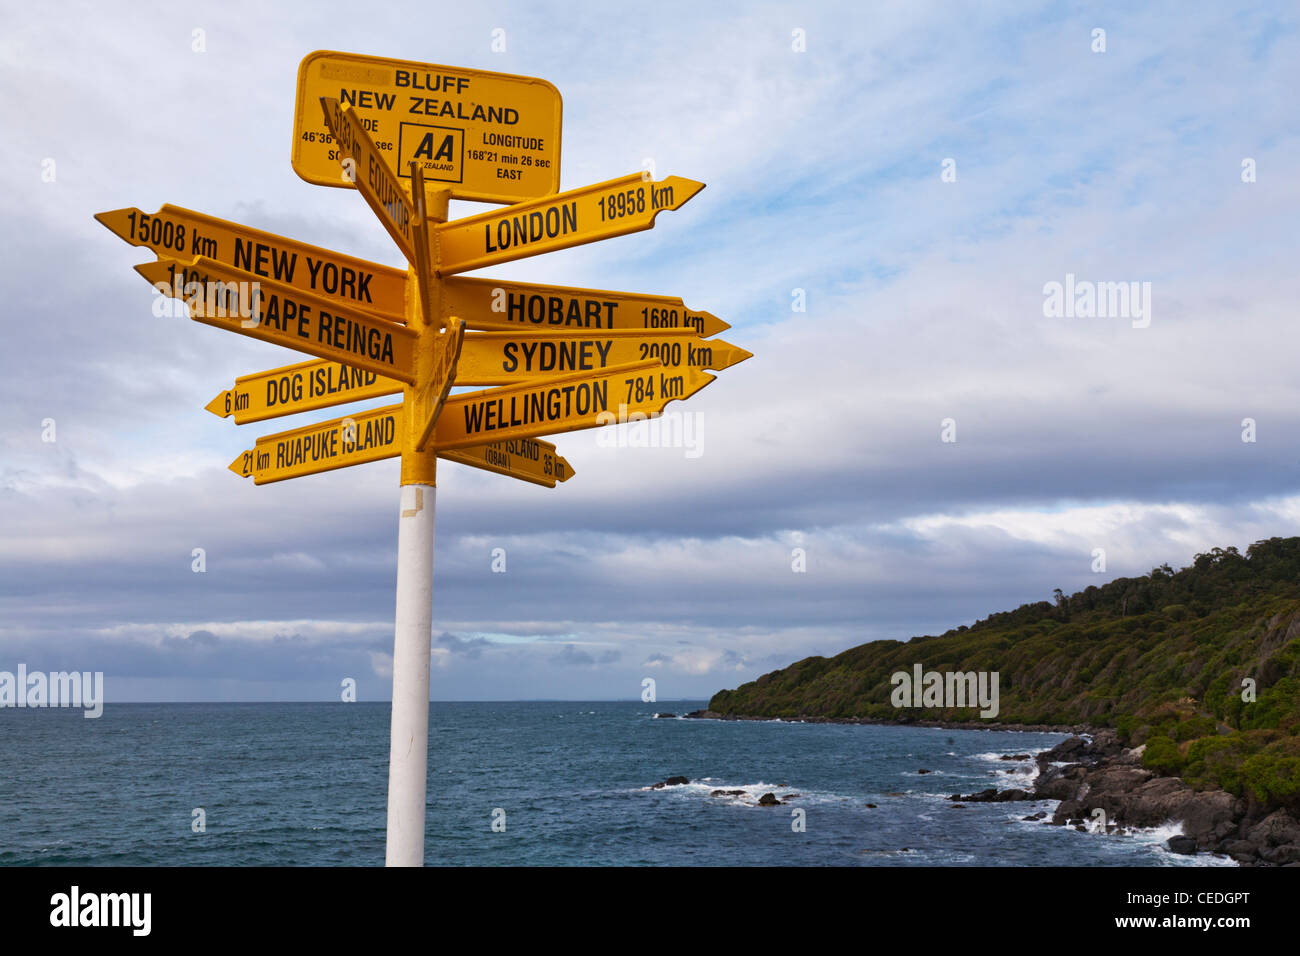 Famoso signo en Bluff en la Isla del Sur de Nueva Zelanda, mostrando la distancia a varias ciudades. Foto de stock